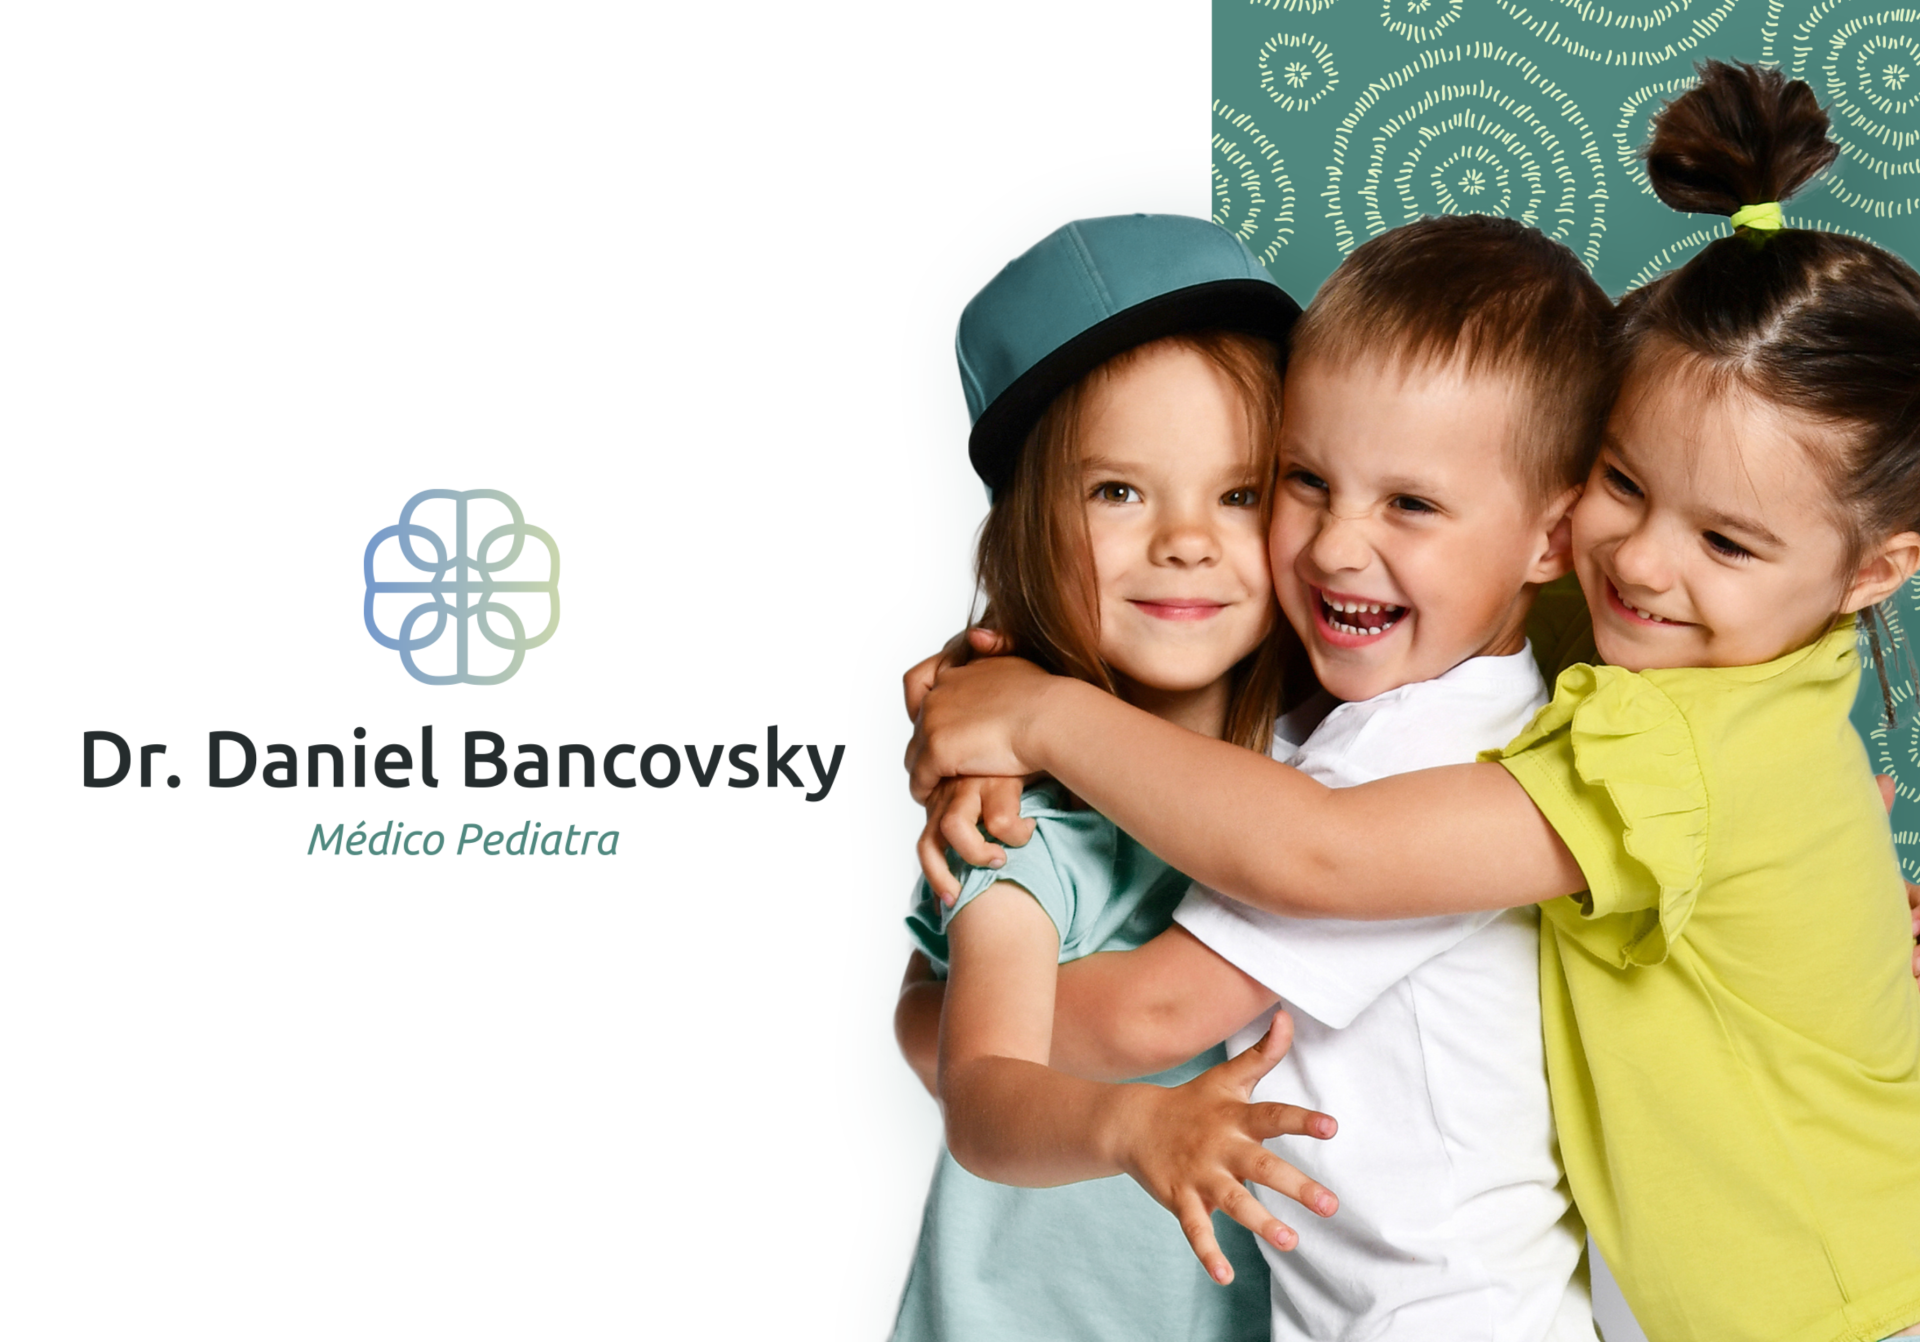 Logo do Dr. Daniel Bancovksy ao lado de imagem com crianças se abraçando, com o pattern da marca.